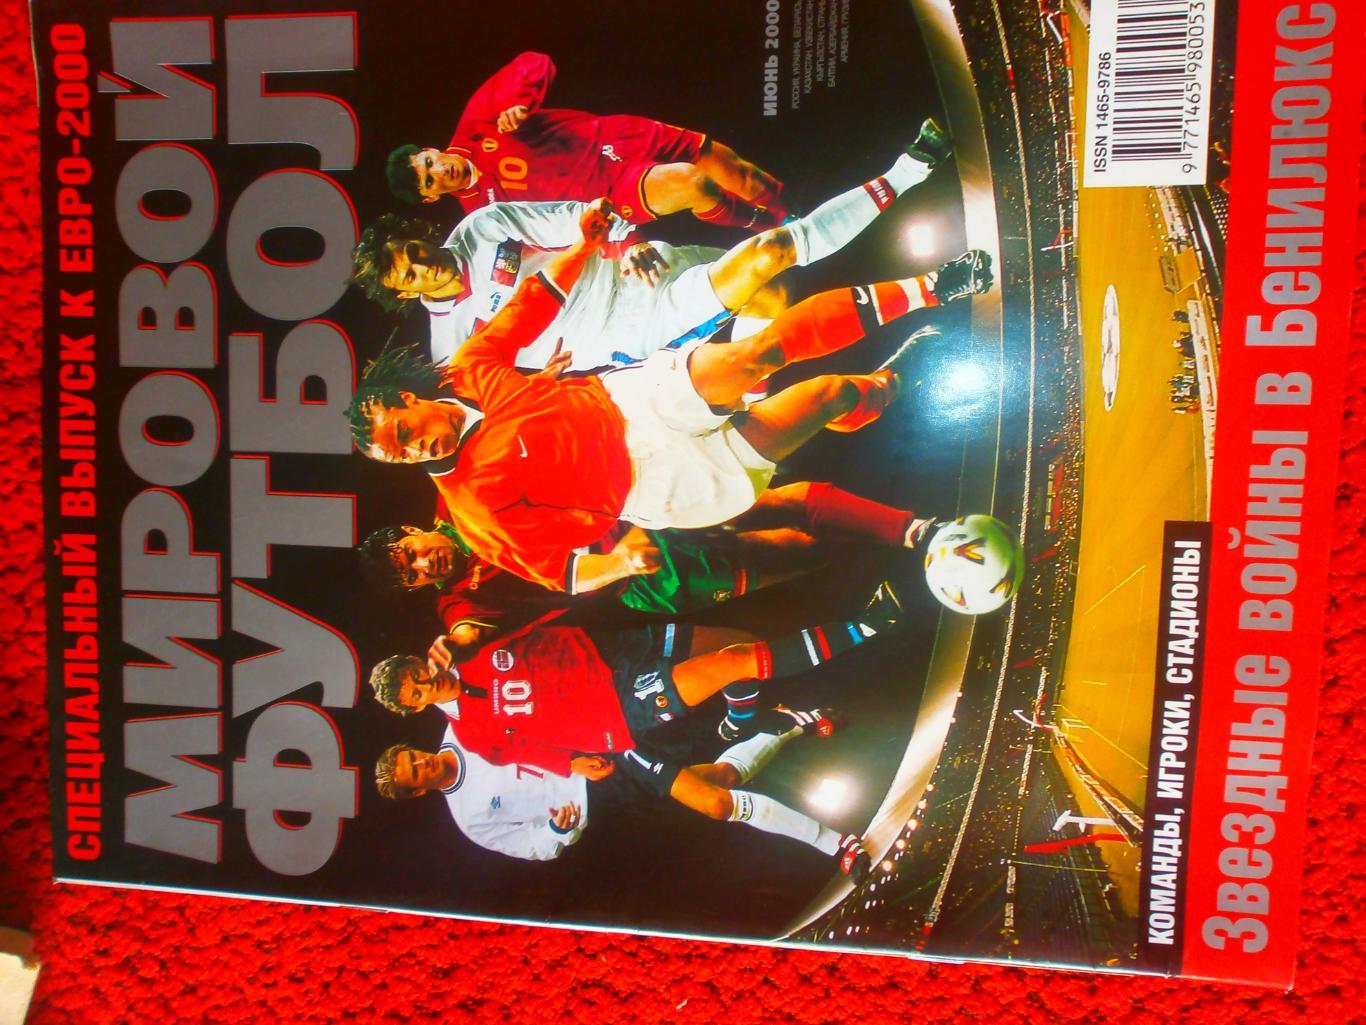 Журнал Мировой футбол Спец. вып. Евро-2000 Есть постеры сб. Гер. Слов. Норв. Пор